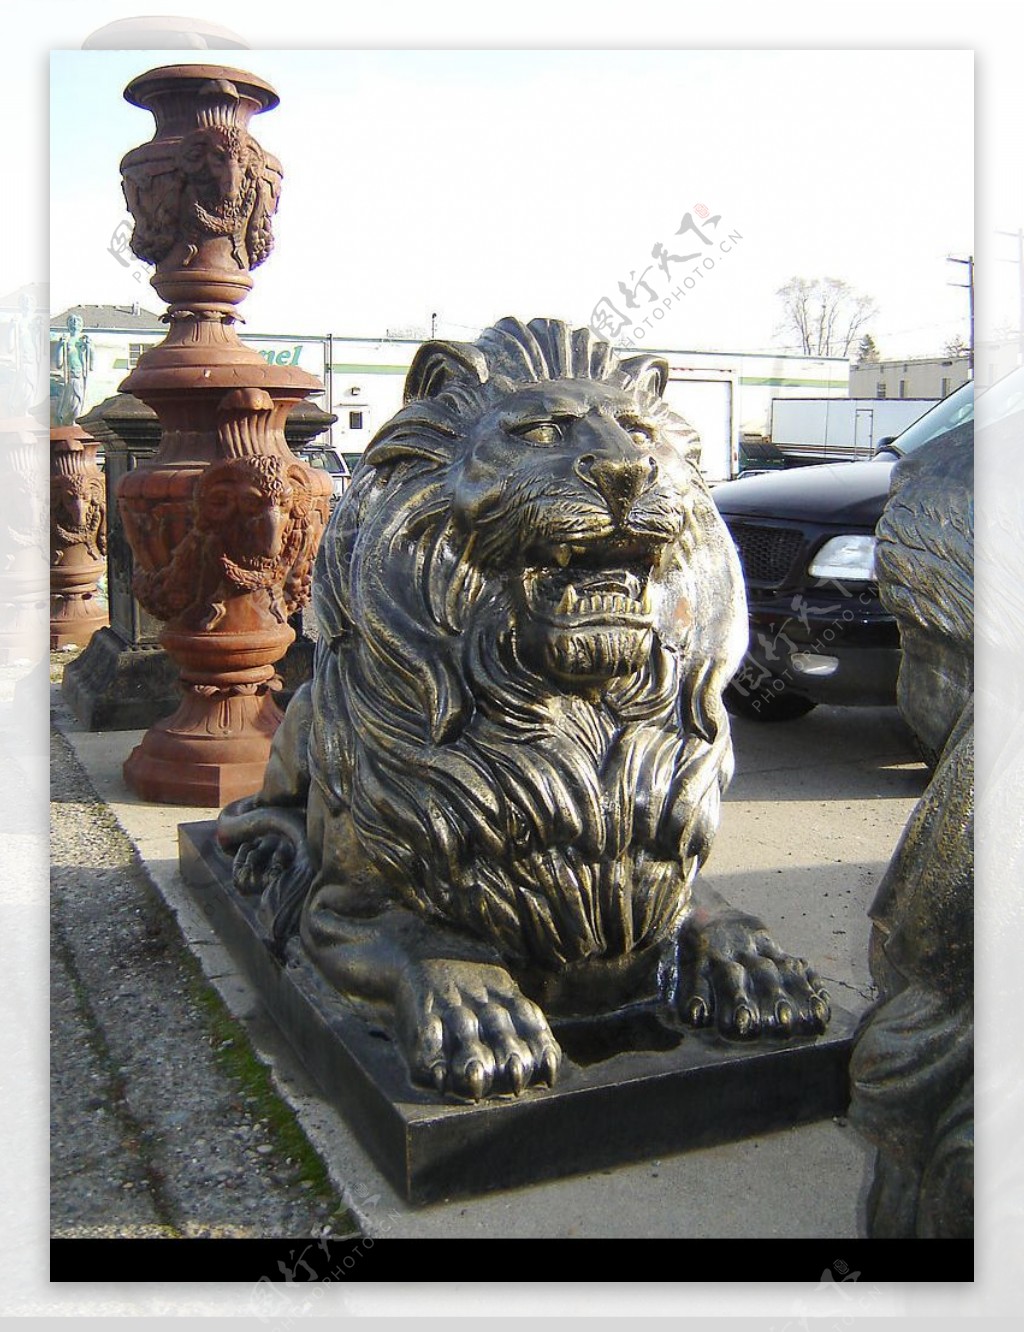 狮子铜像图片